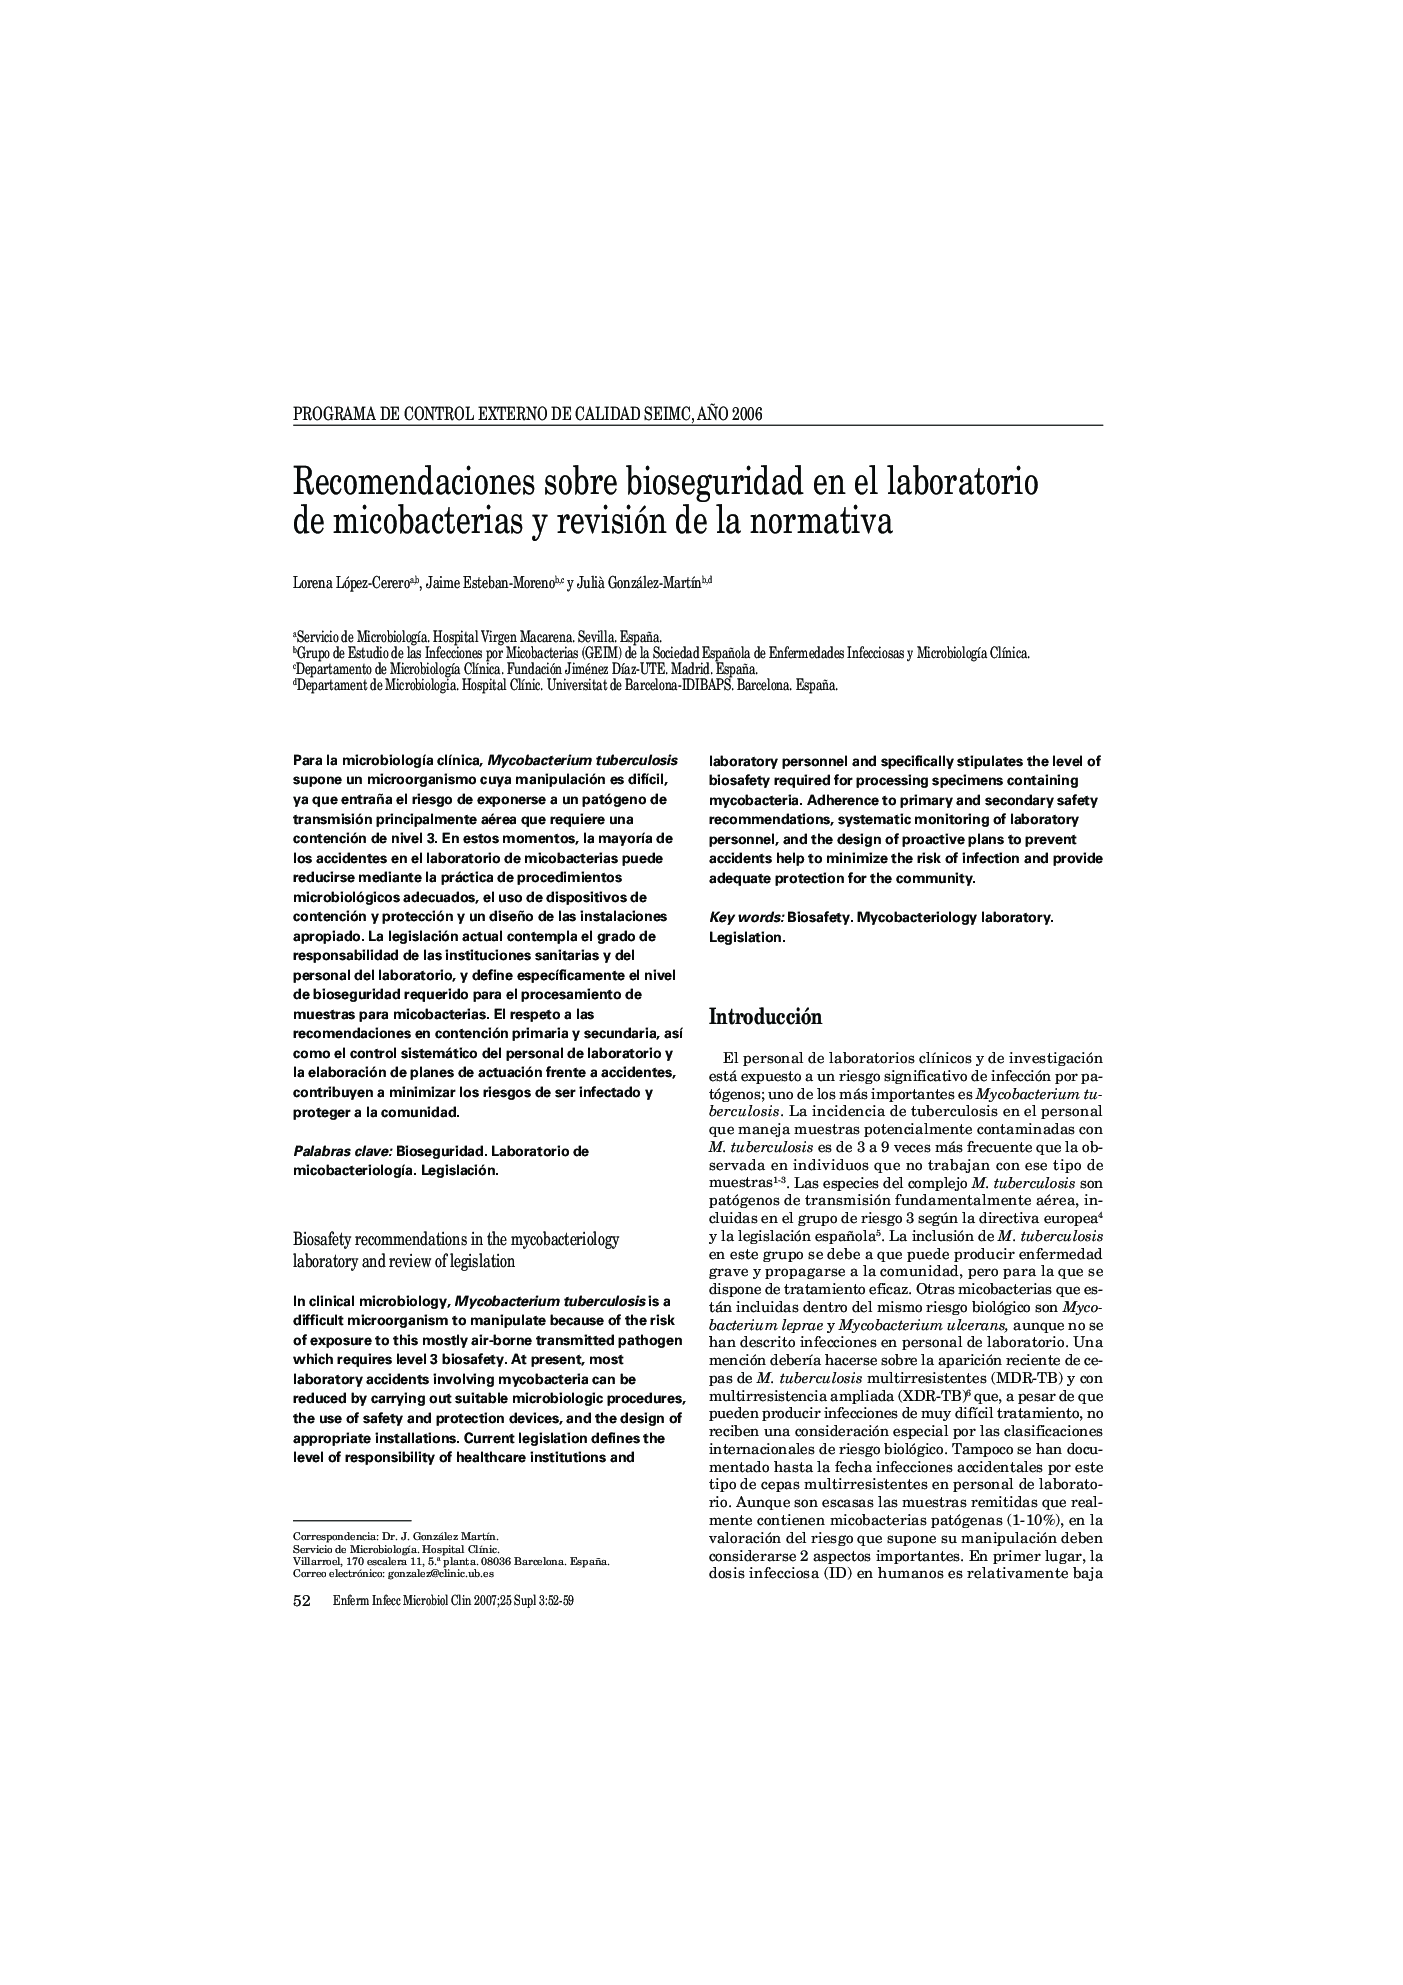 Recomendaciones sobre bioseguridad en el laboratorio de micobacterias y revisión de la normativa